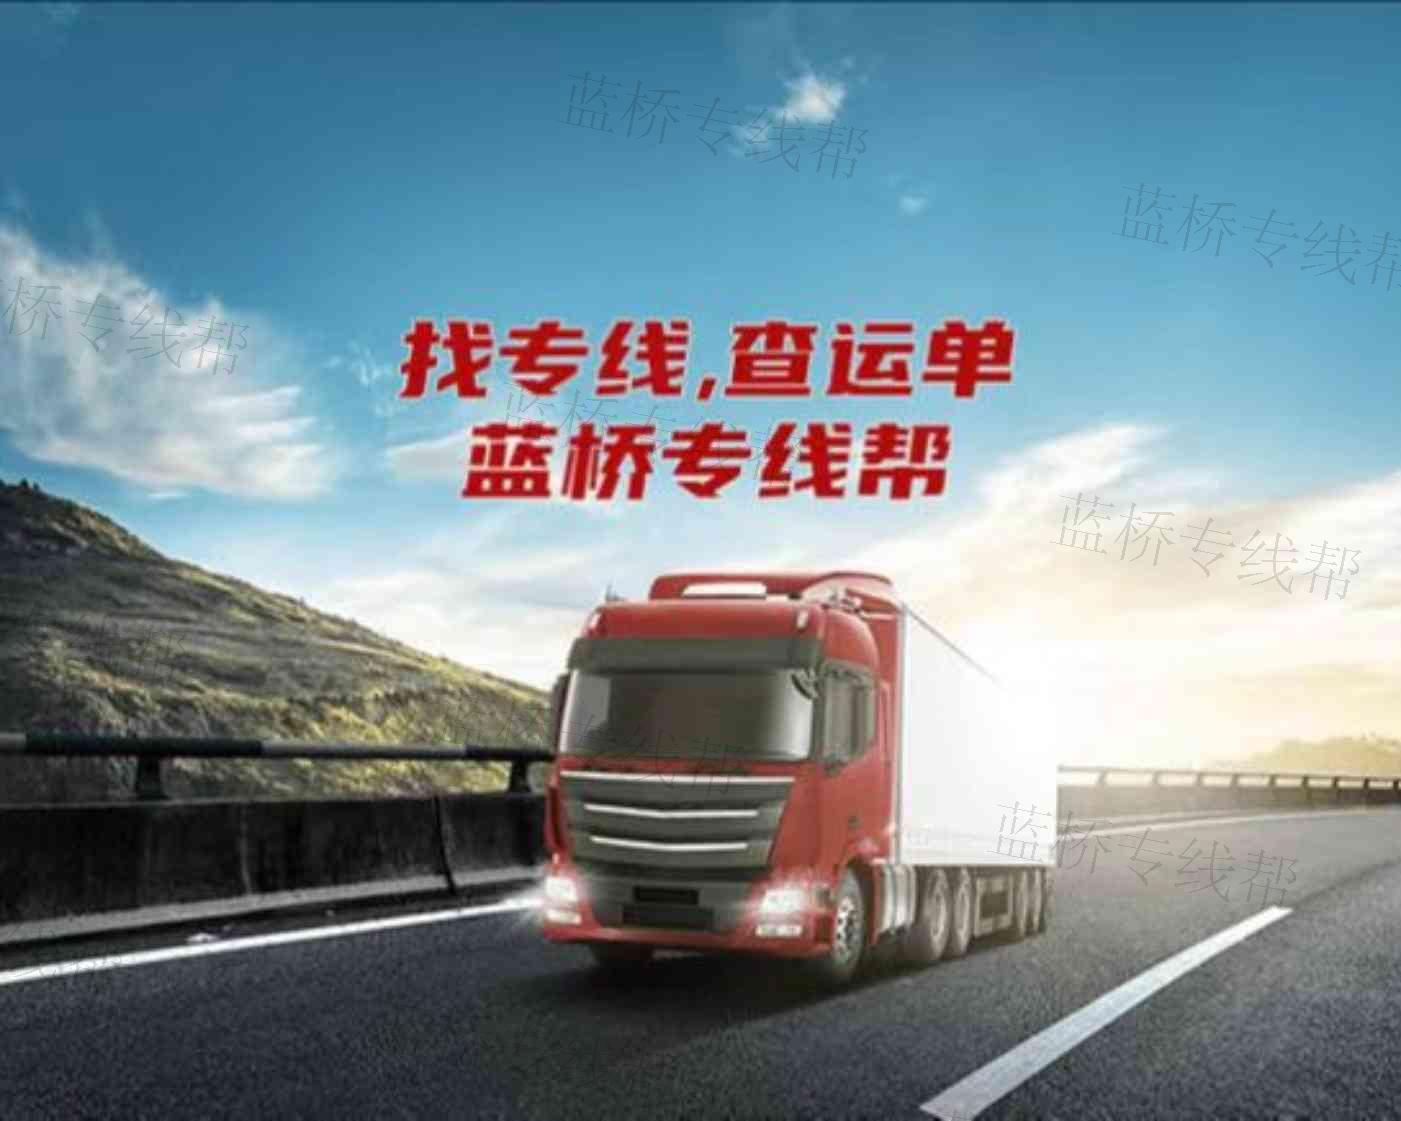 上海双翰供应链管理有限公司